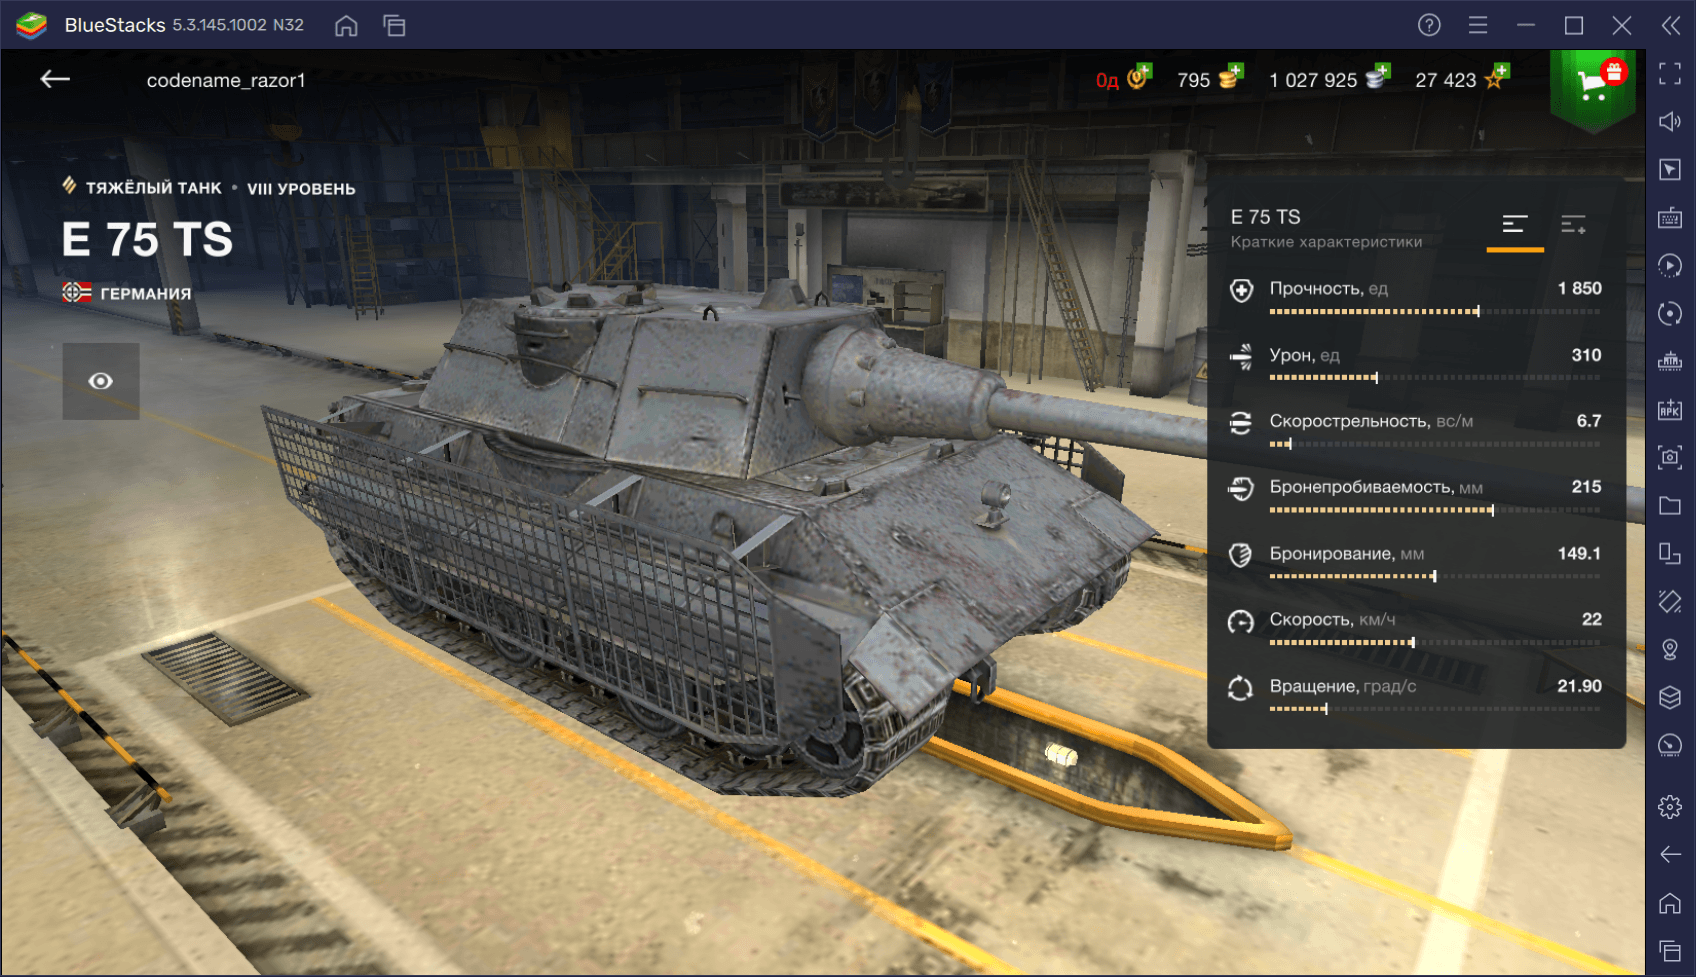 Обзор немецкого премиумного танка Е 75 TS в World of Tanks Blitz. Характеристики, достоинства и лучшие тактики игры